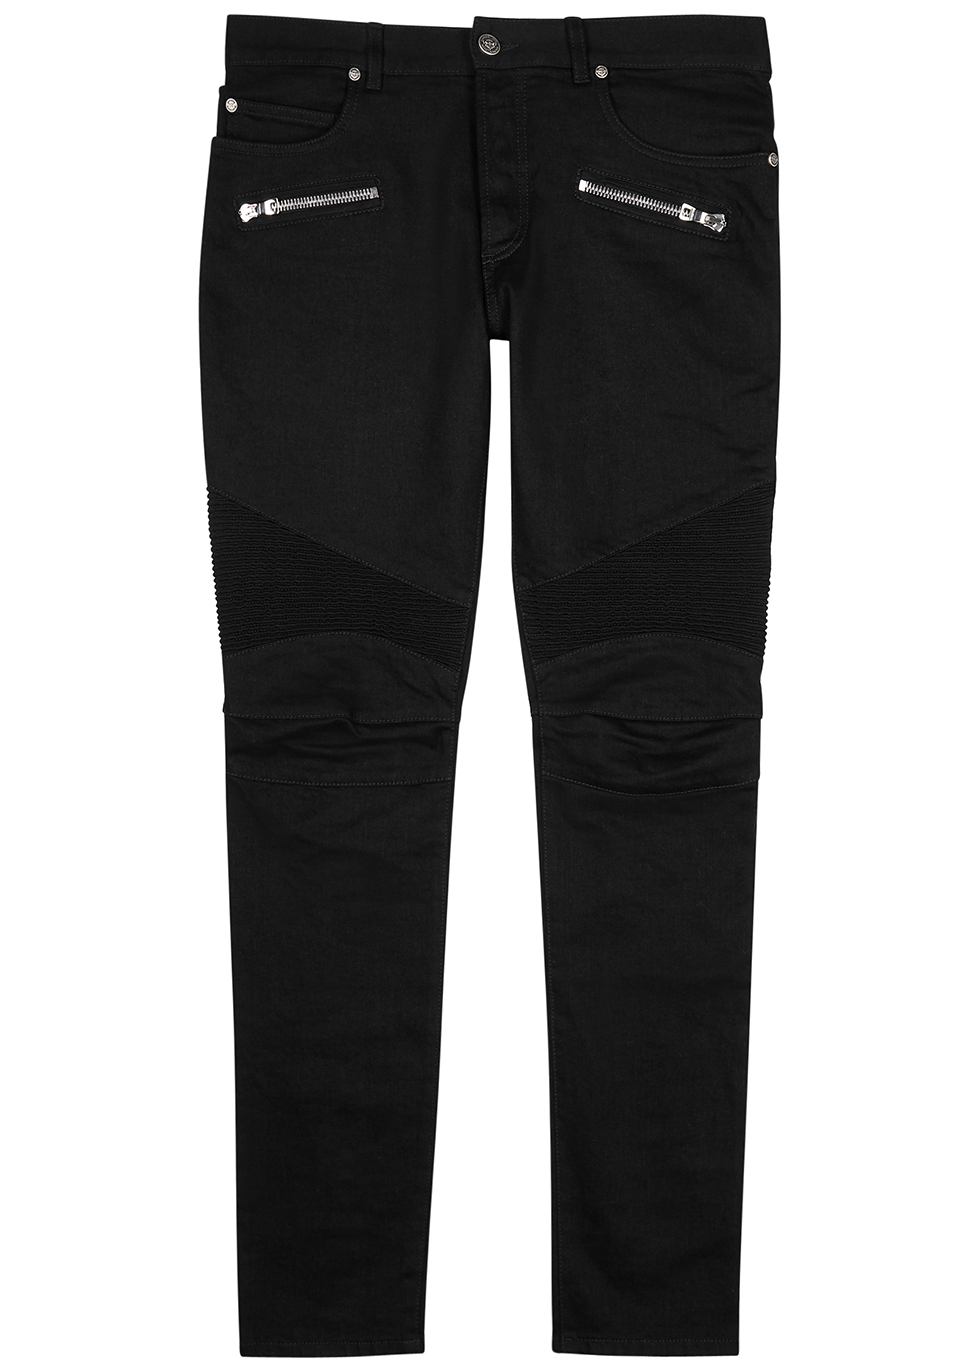 balmain black biker jeans